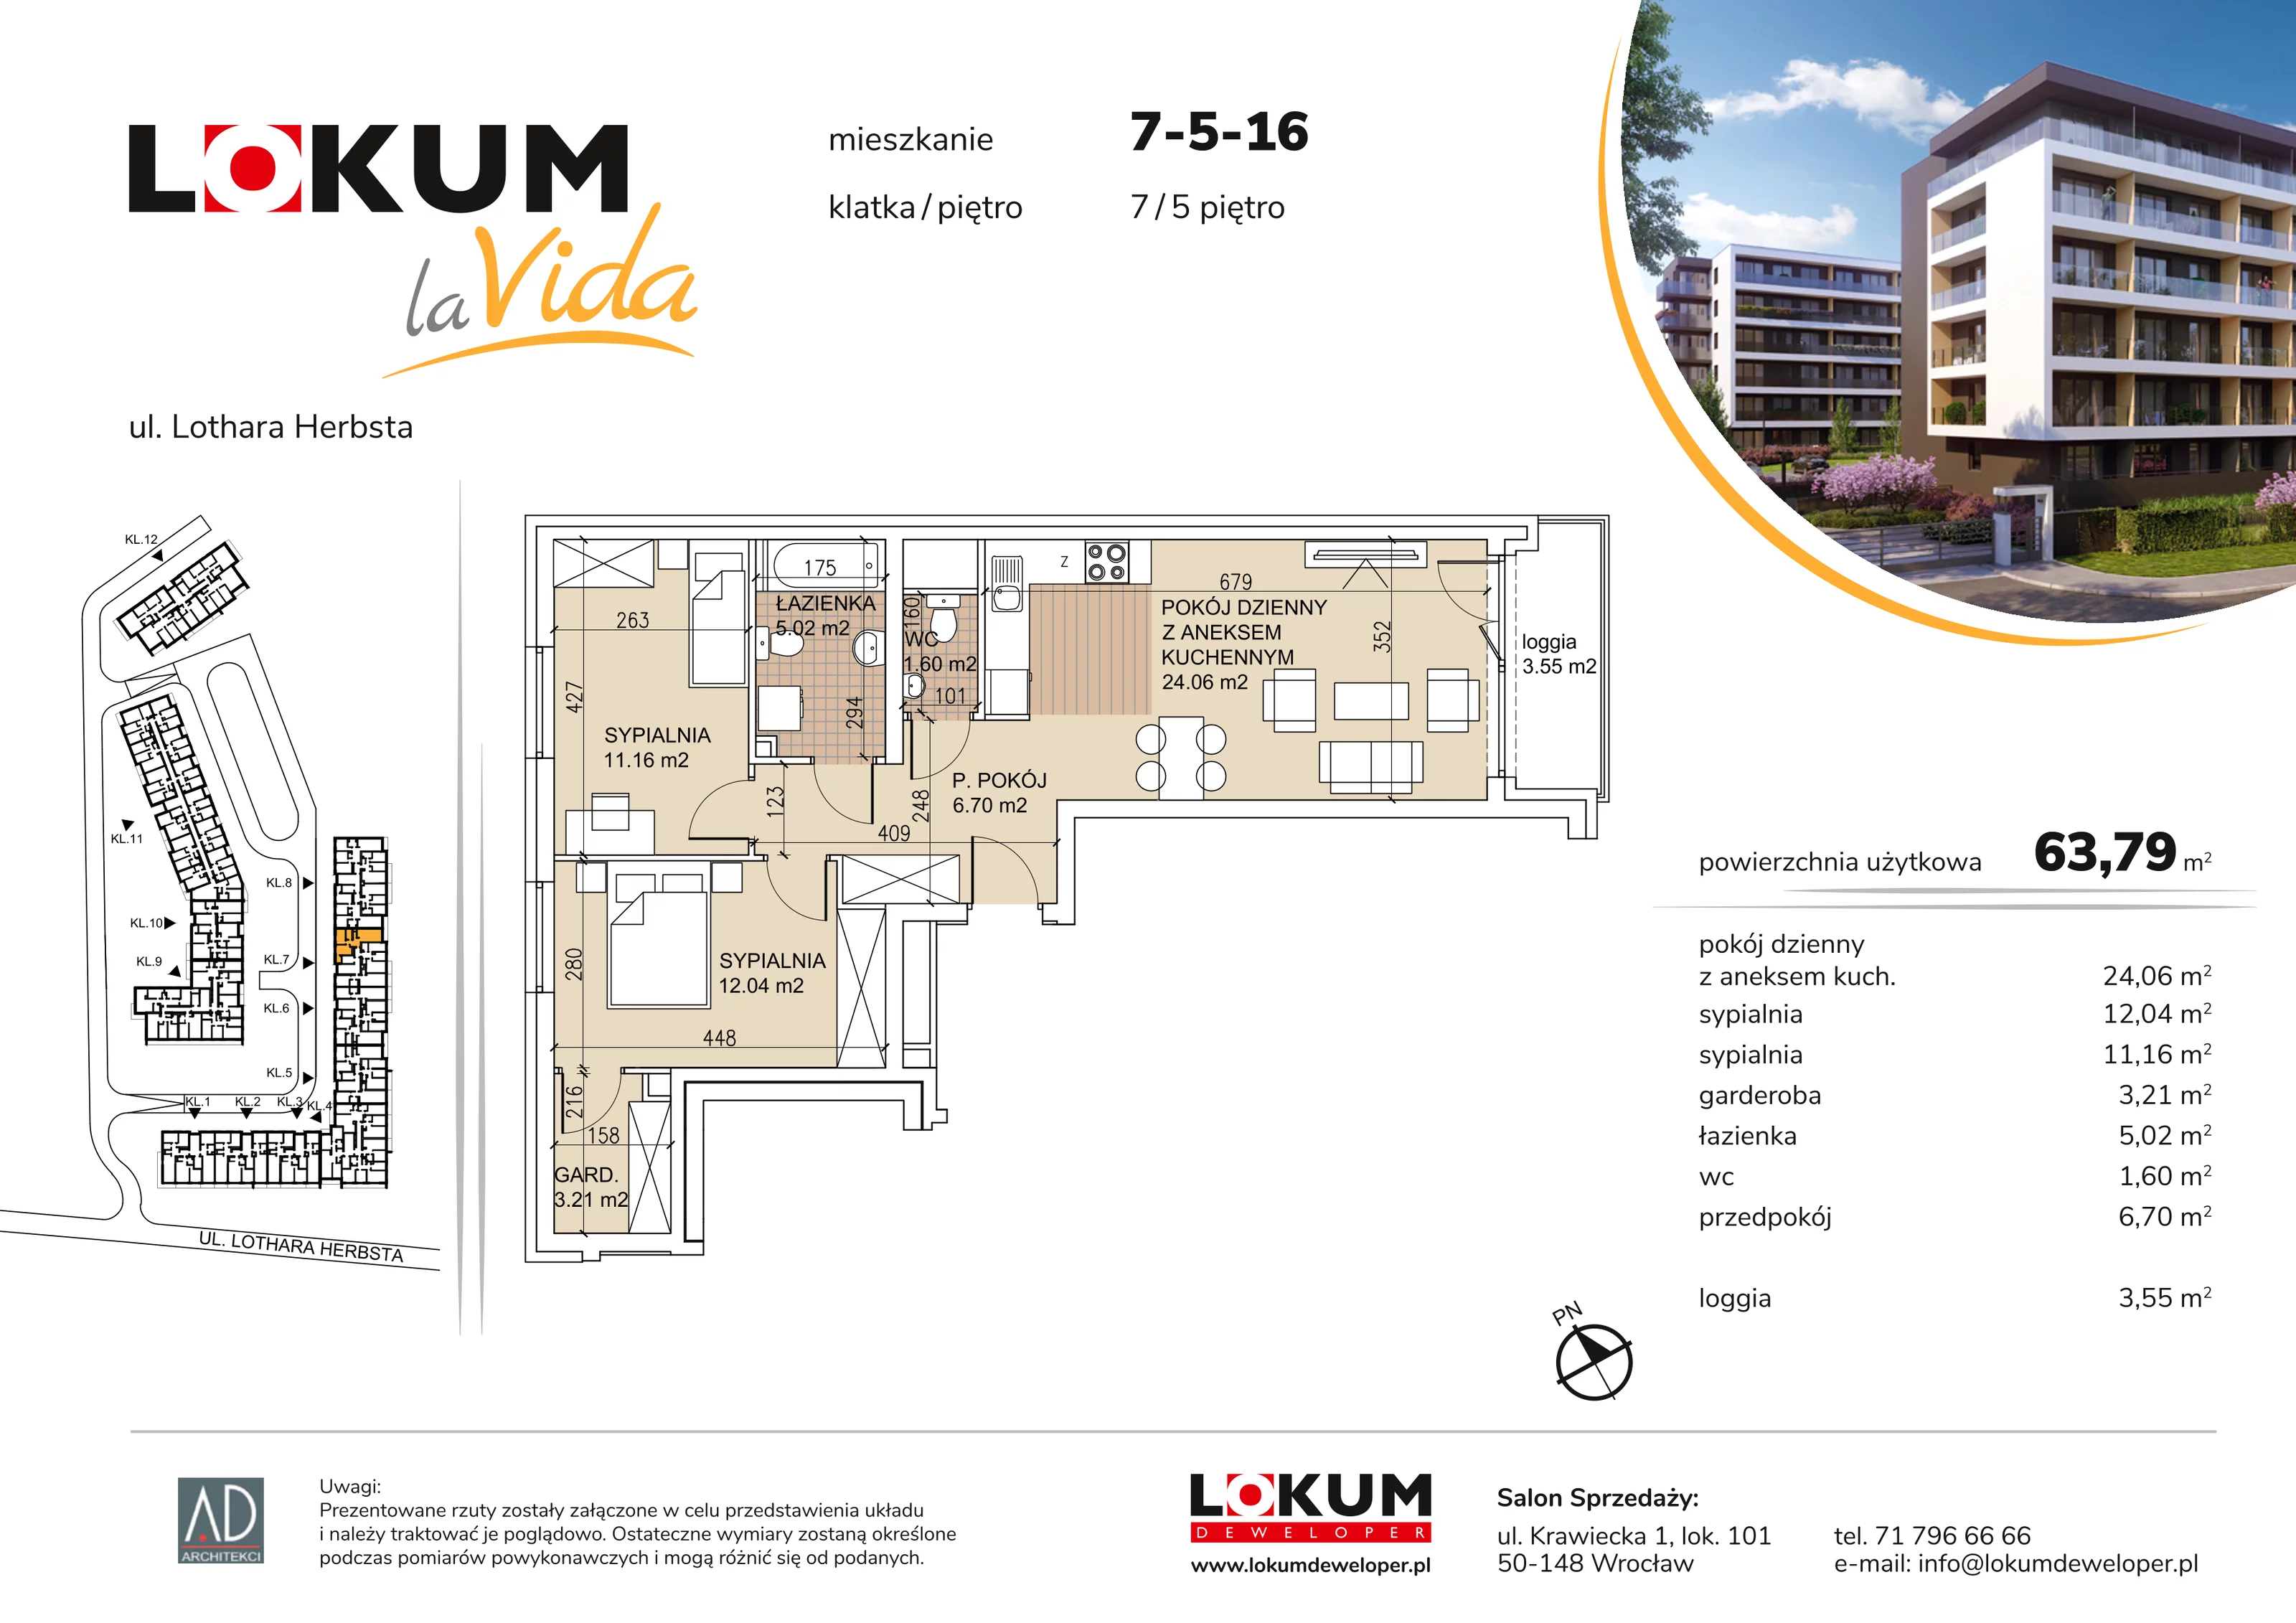 Mieszkanie 63,79 m², piętro 5, oferta nr 7-5-16, Lokum la Vida, Wrocław, Sołtysowice, ul. Lothara Herbsta